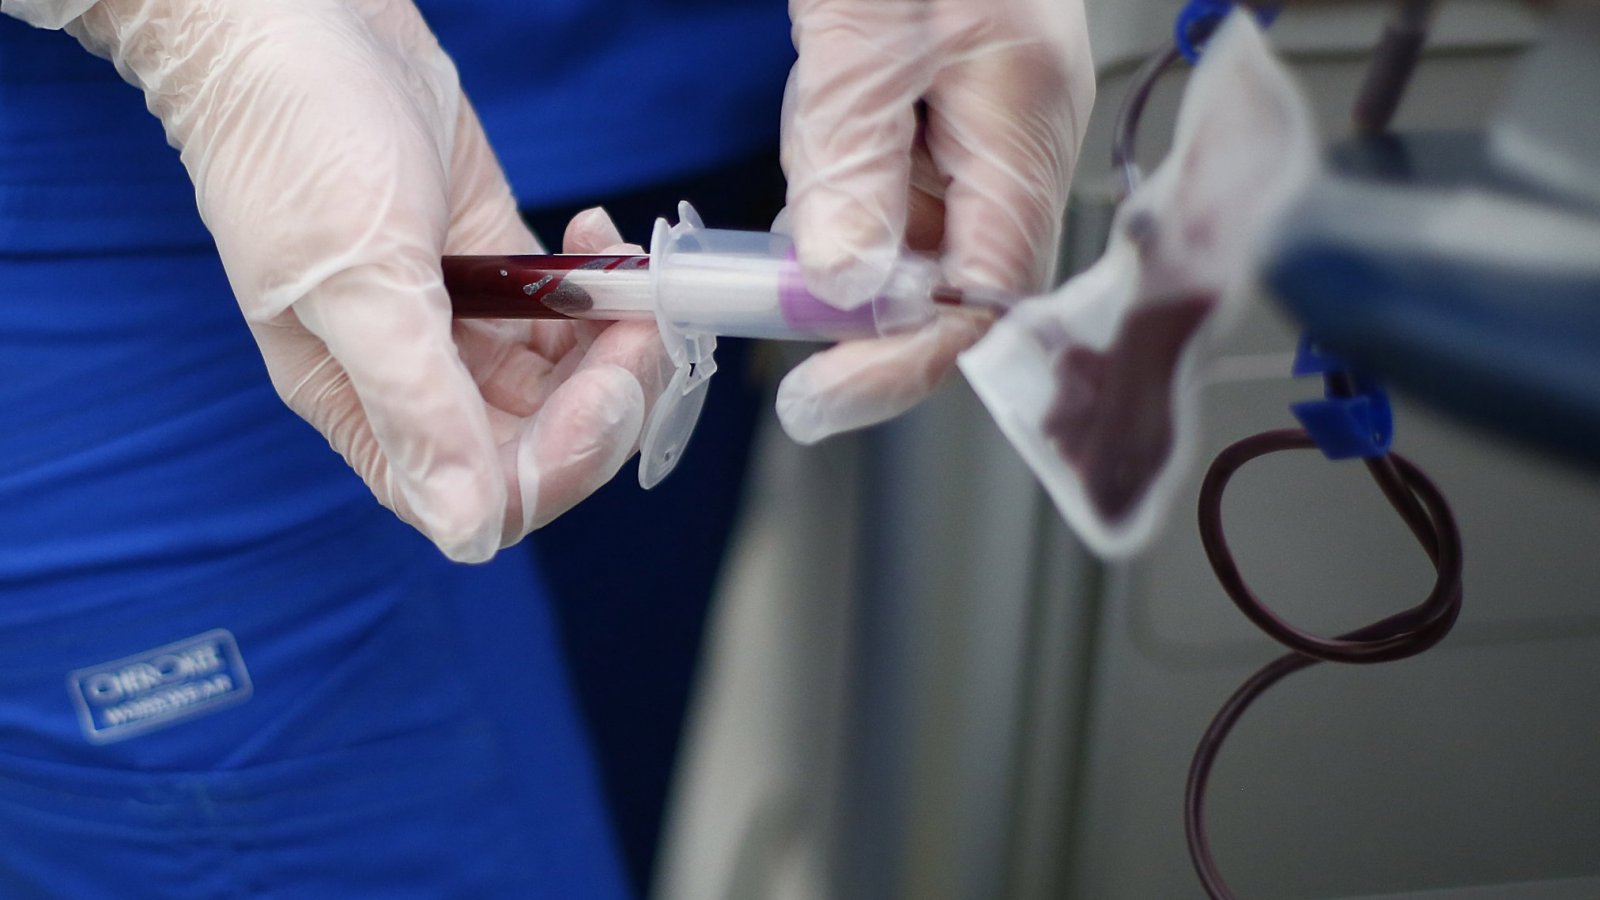 Madre se opone: Corte ordena transfusión de sangre a niño para salvar su  vida | 24horas